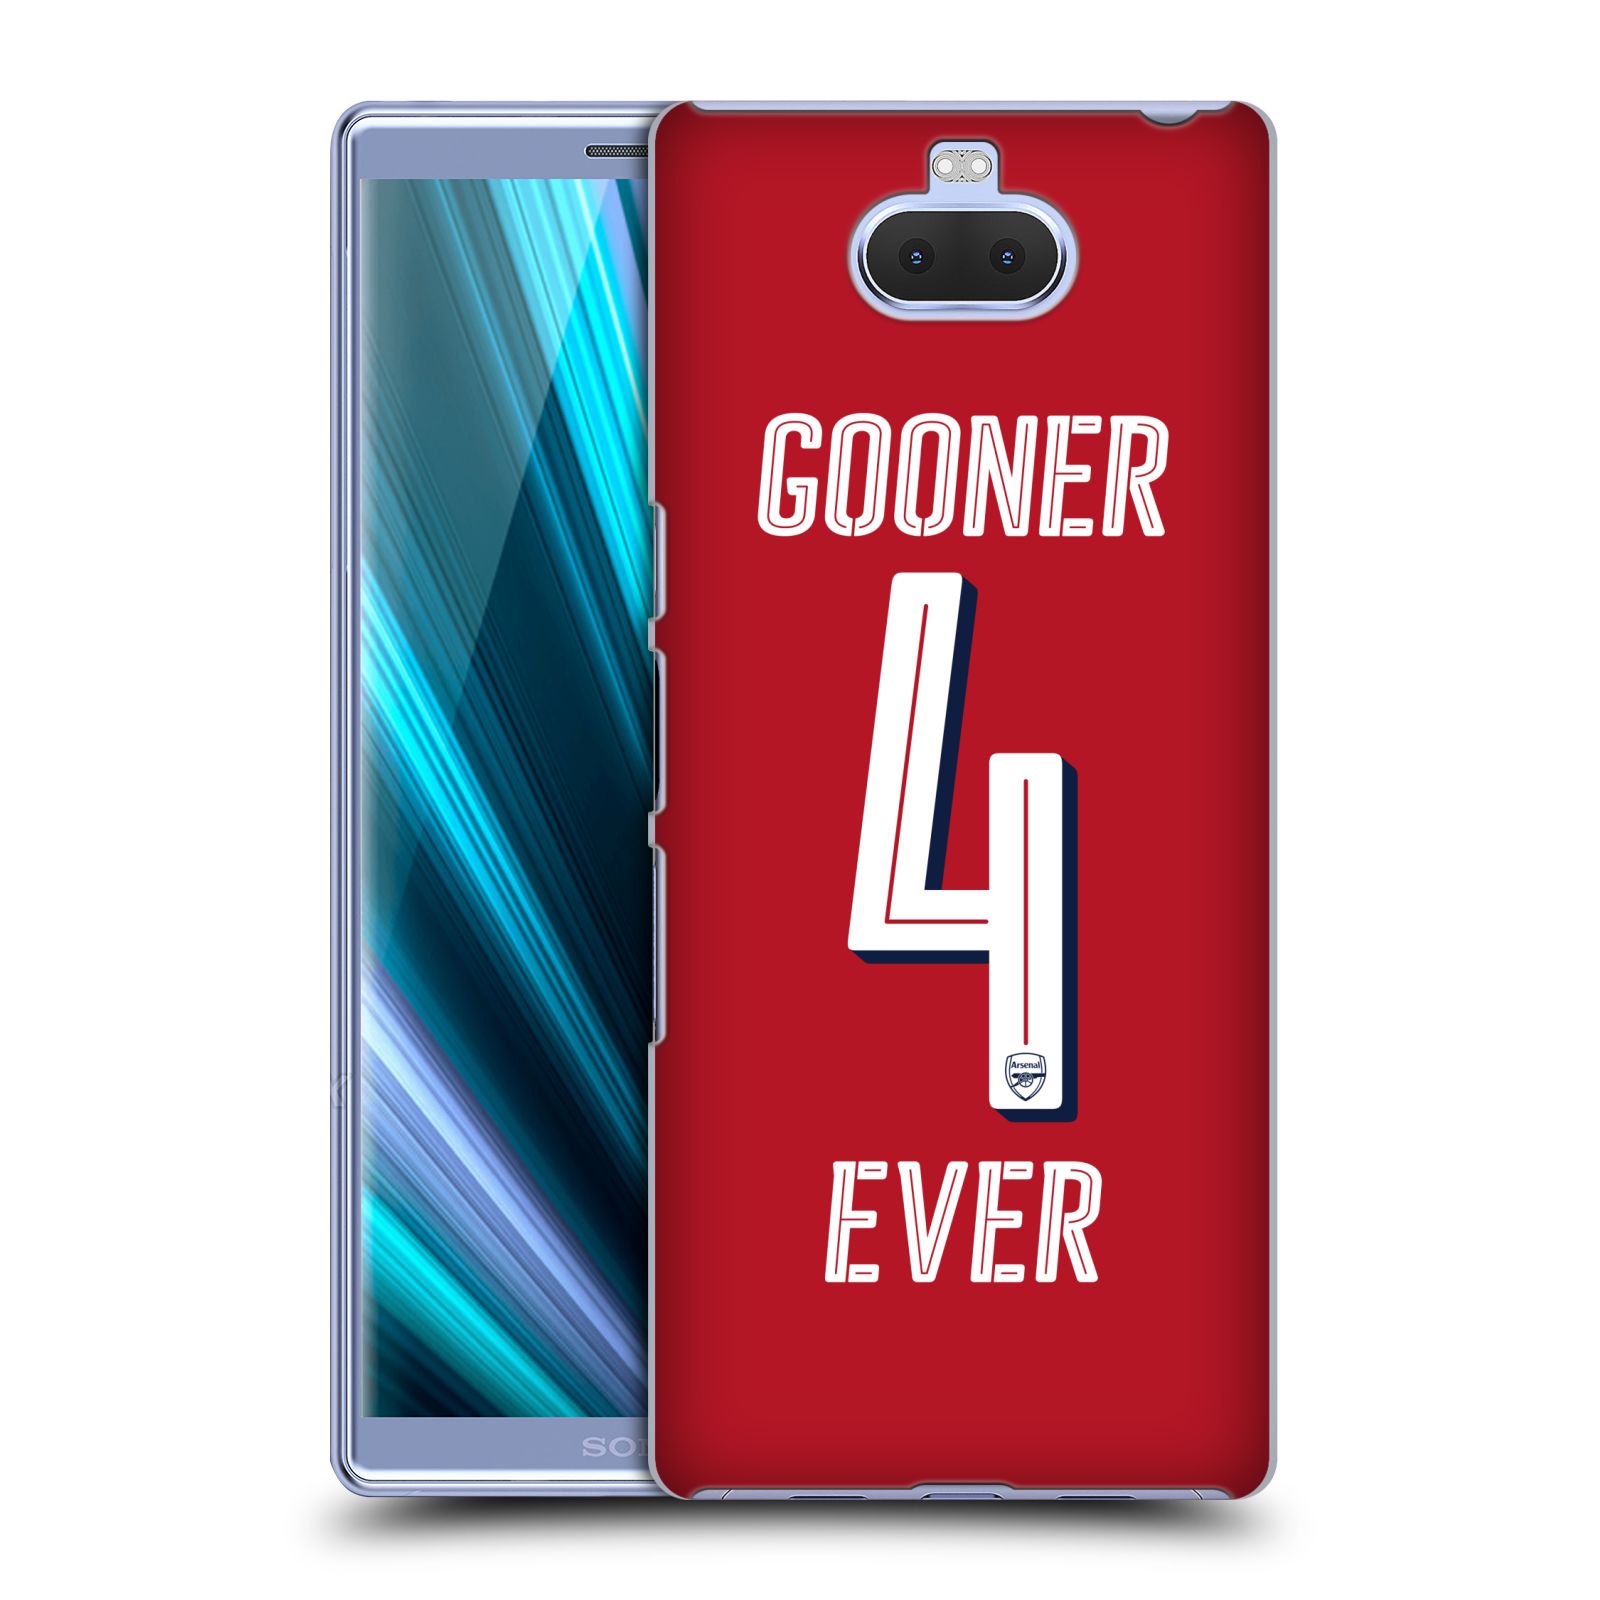 Pouzdro na mobil Sony Xperia 10 Plus - Head Case - Fotbalový klub Arsenal navždy 4 ever červená